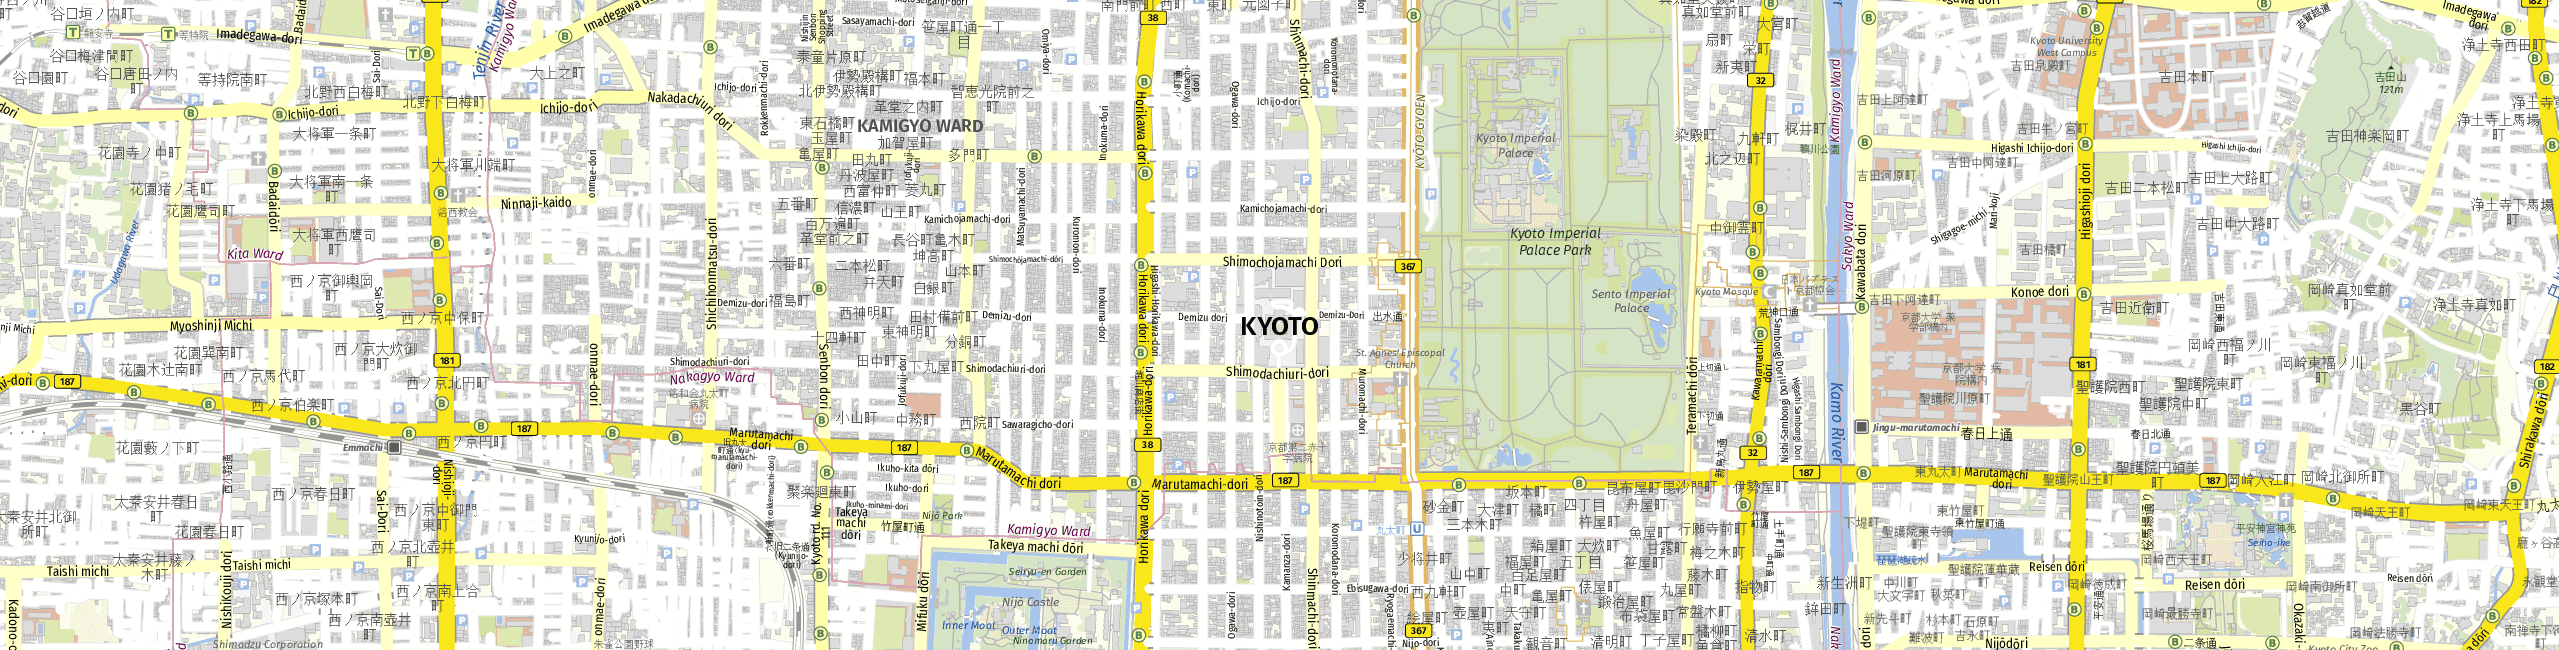 Stadtplan Kyoto zum Downloaden.